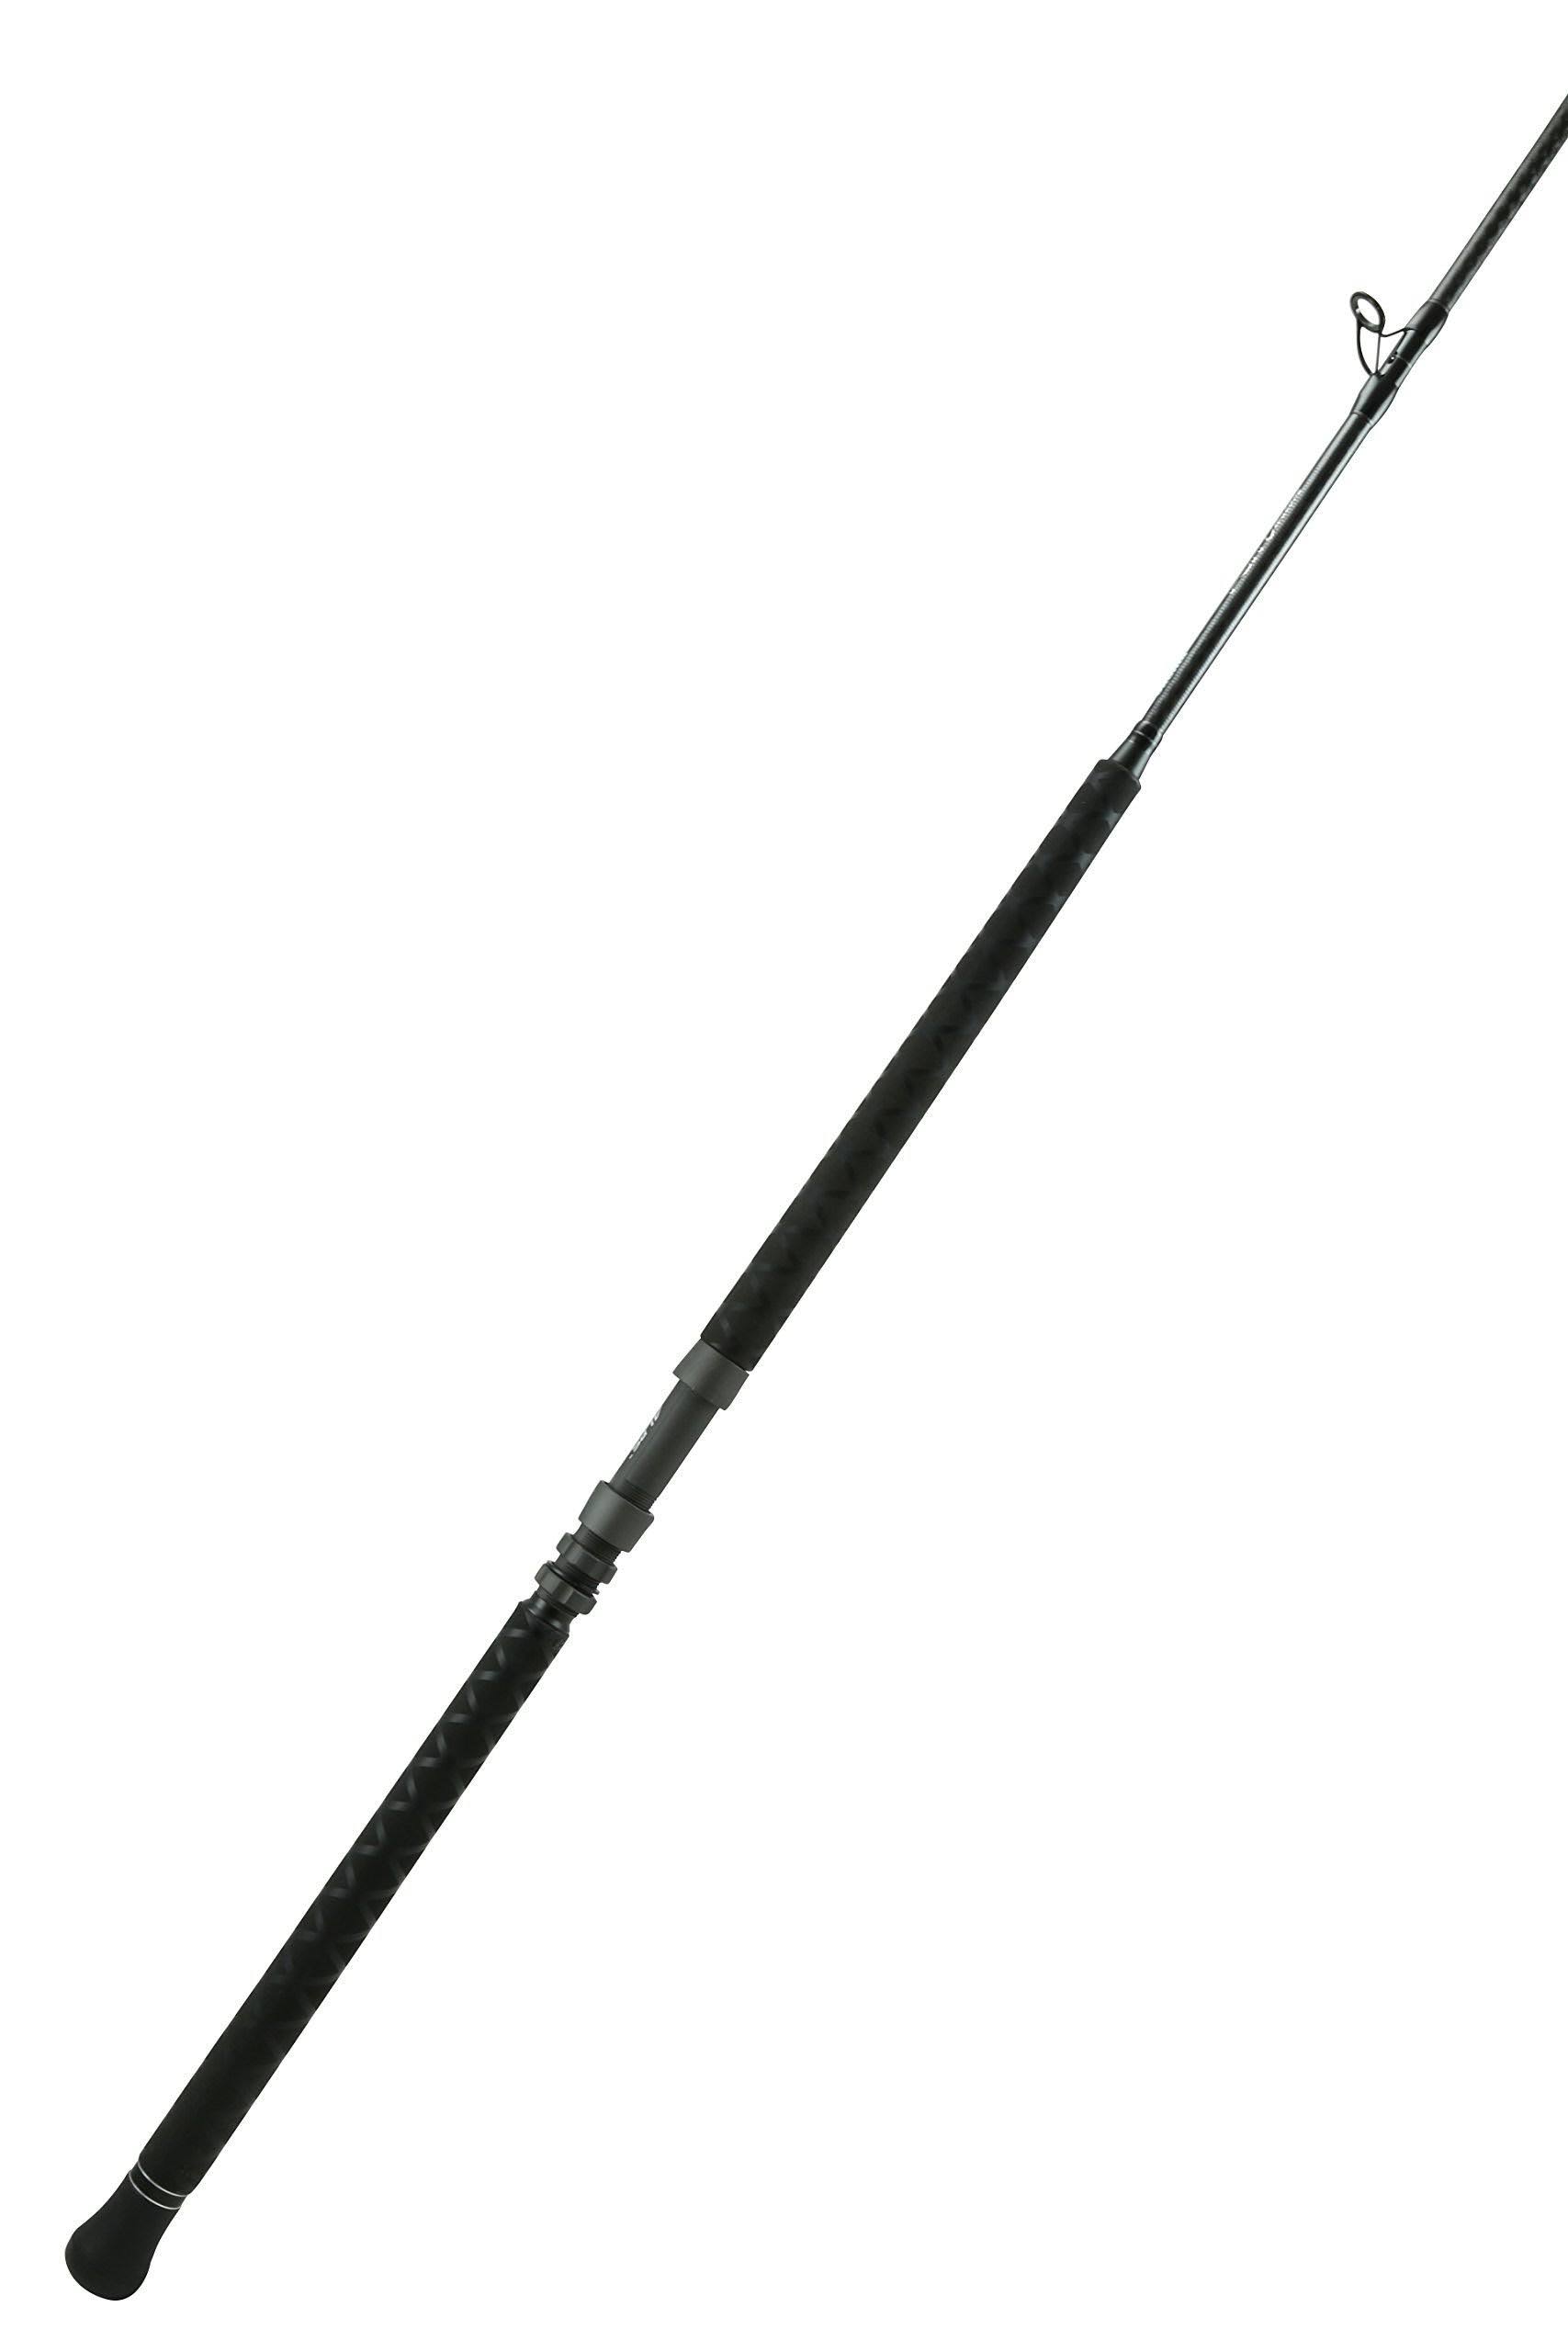 Okuma - PCH Custom Rod 8' 0" XH 1-pcs 30-60 lbs - PCH-C-801XH